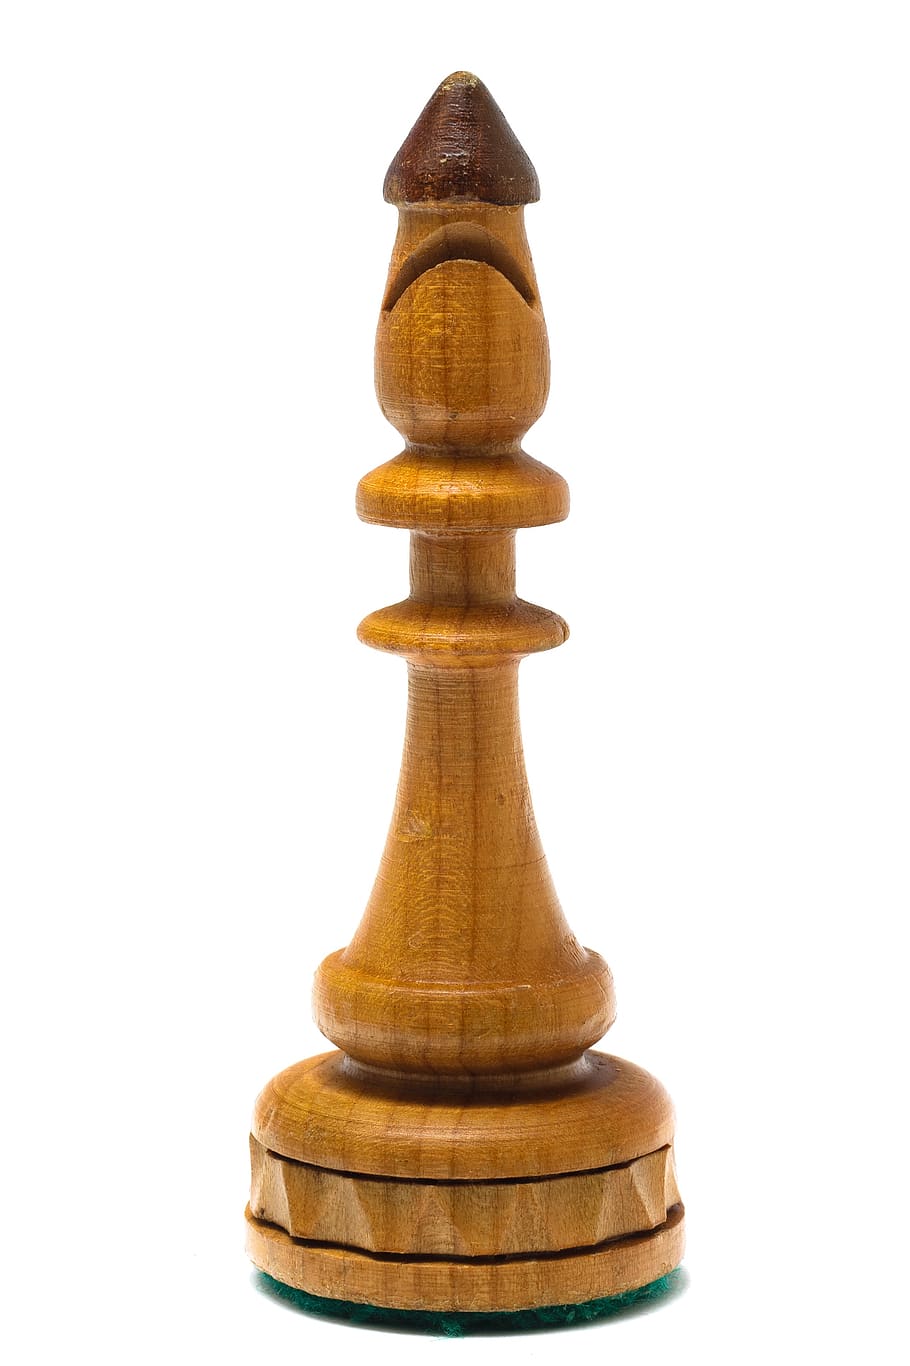 obispo, ajedrez, peón, blanco, fondo blanco, bierki, tablero de ajedrez, figuras, la estrategia, laufer